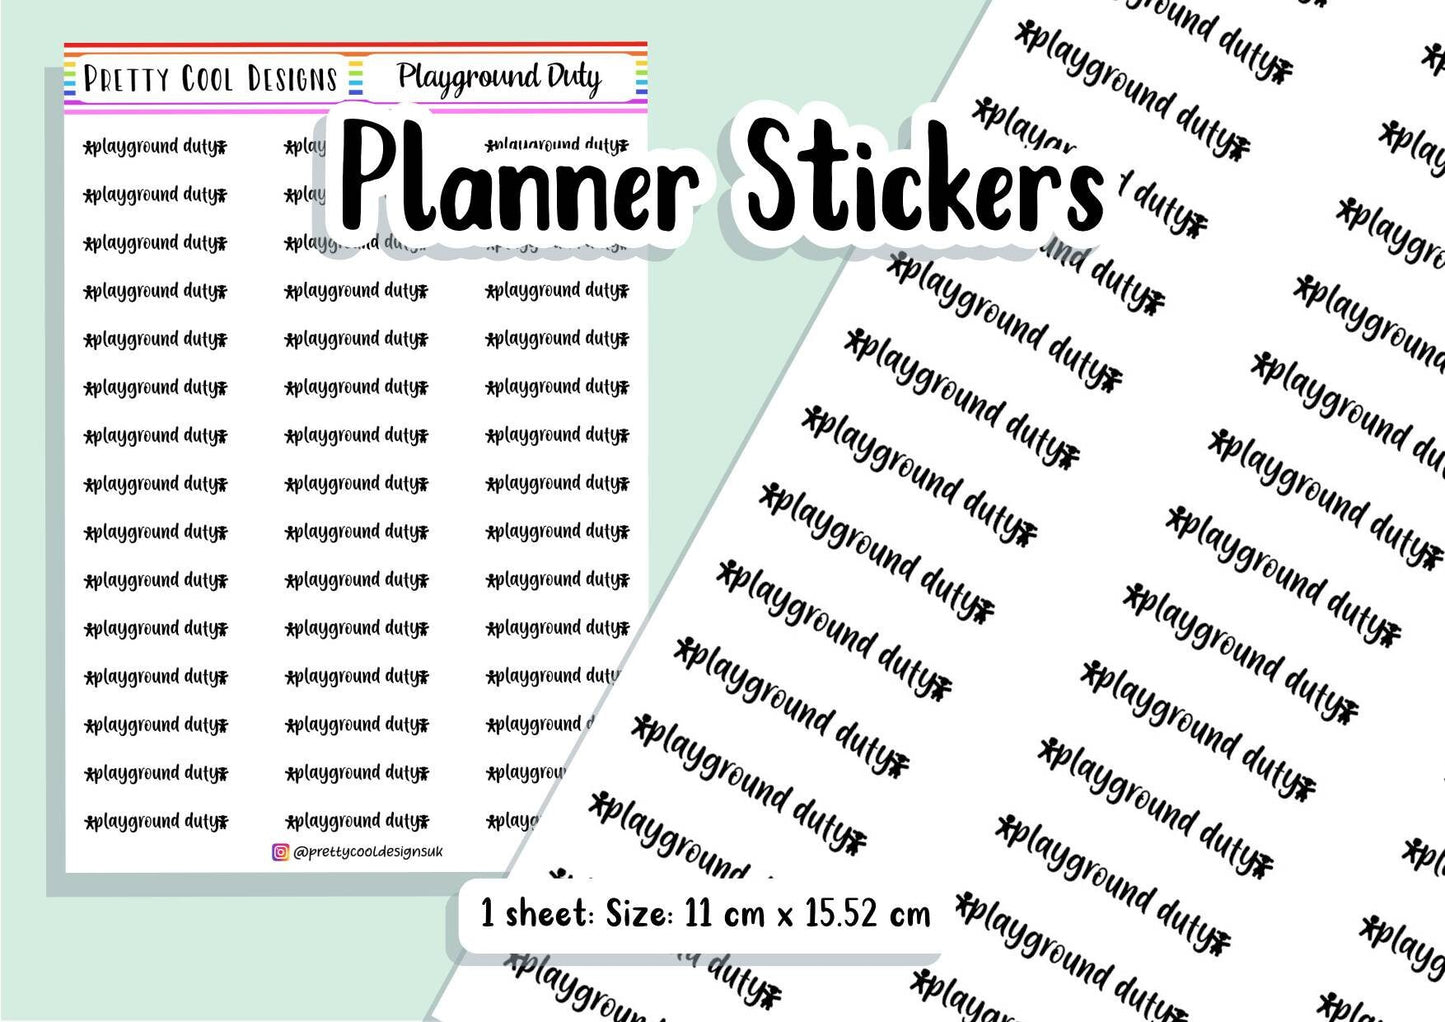 Playground Duty Teacher Planner Stickers UK - 1 Sheet